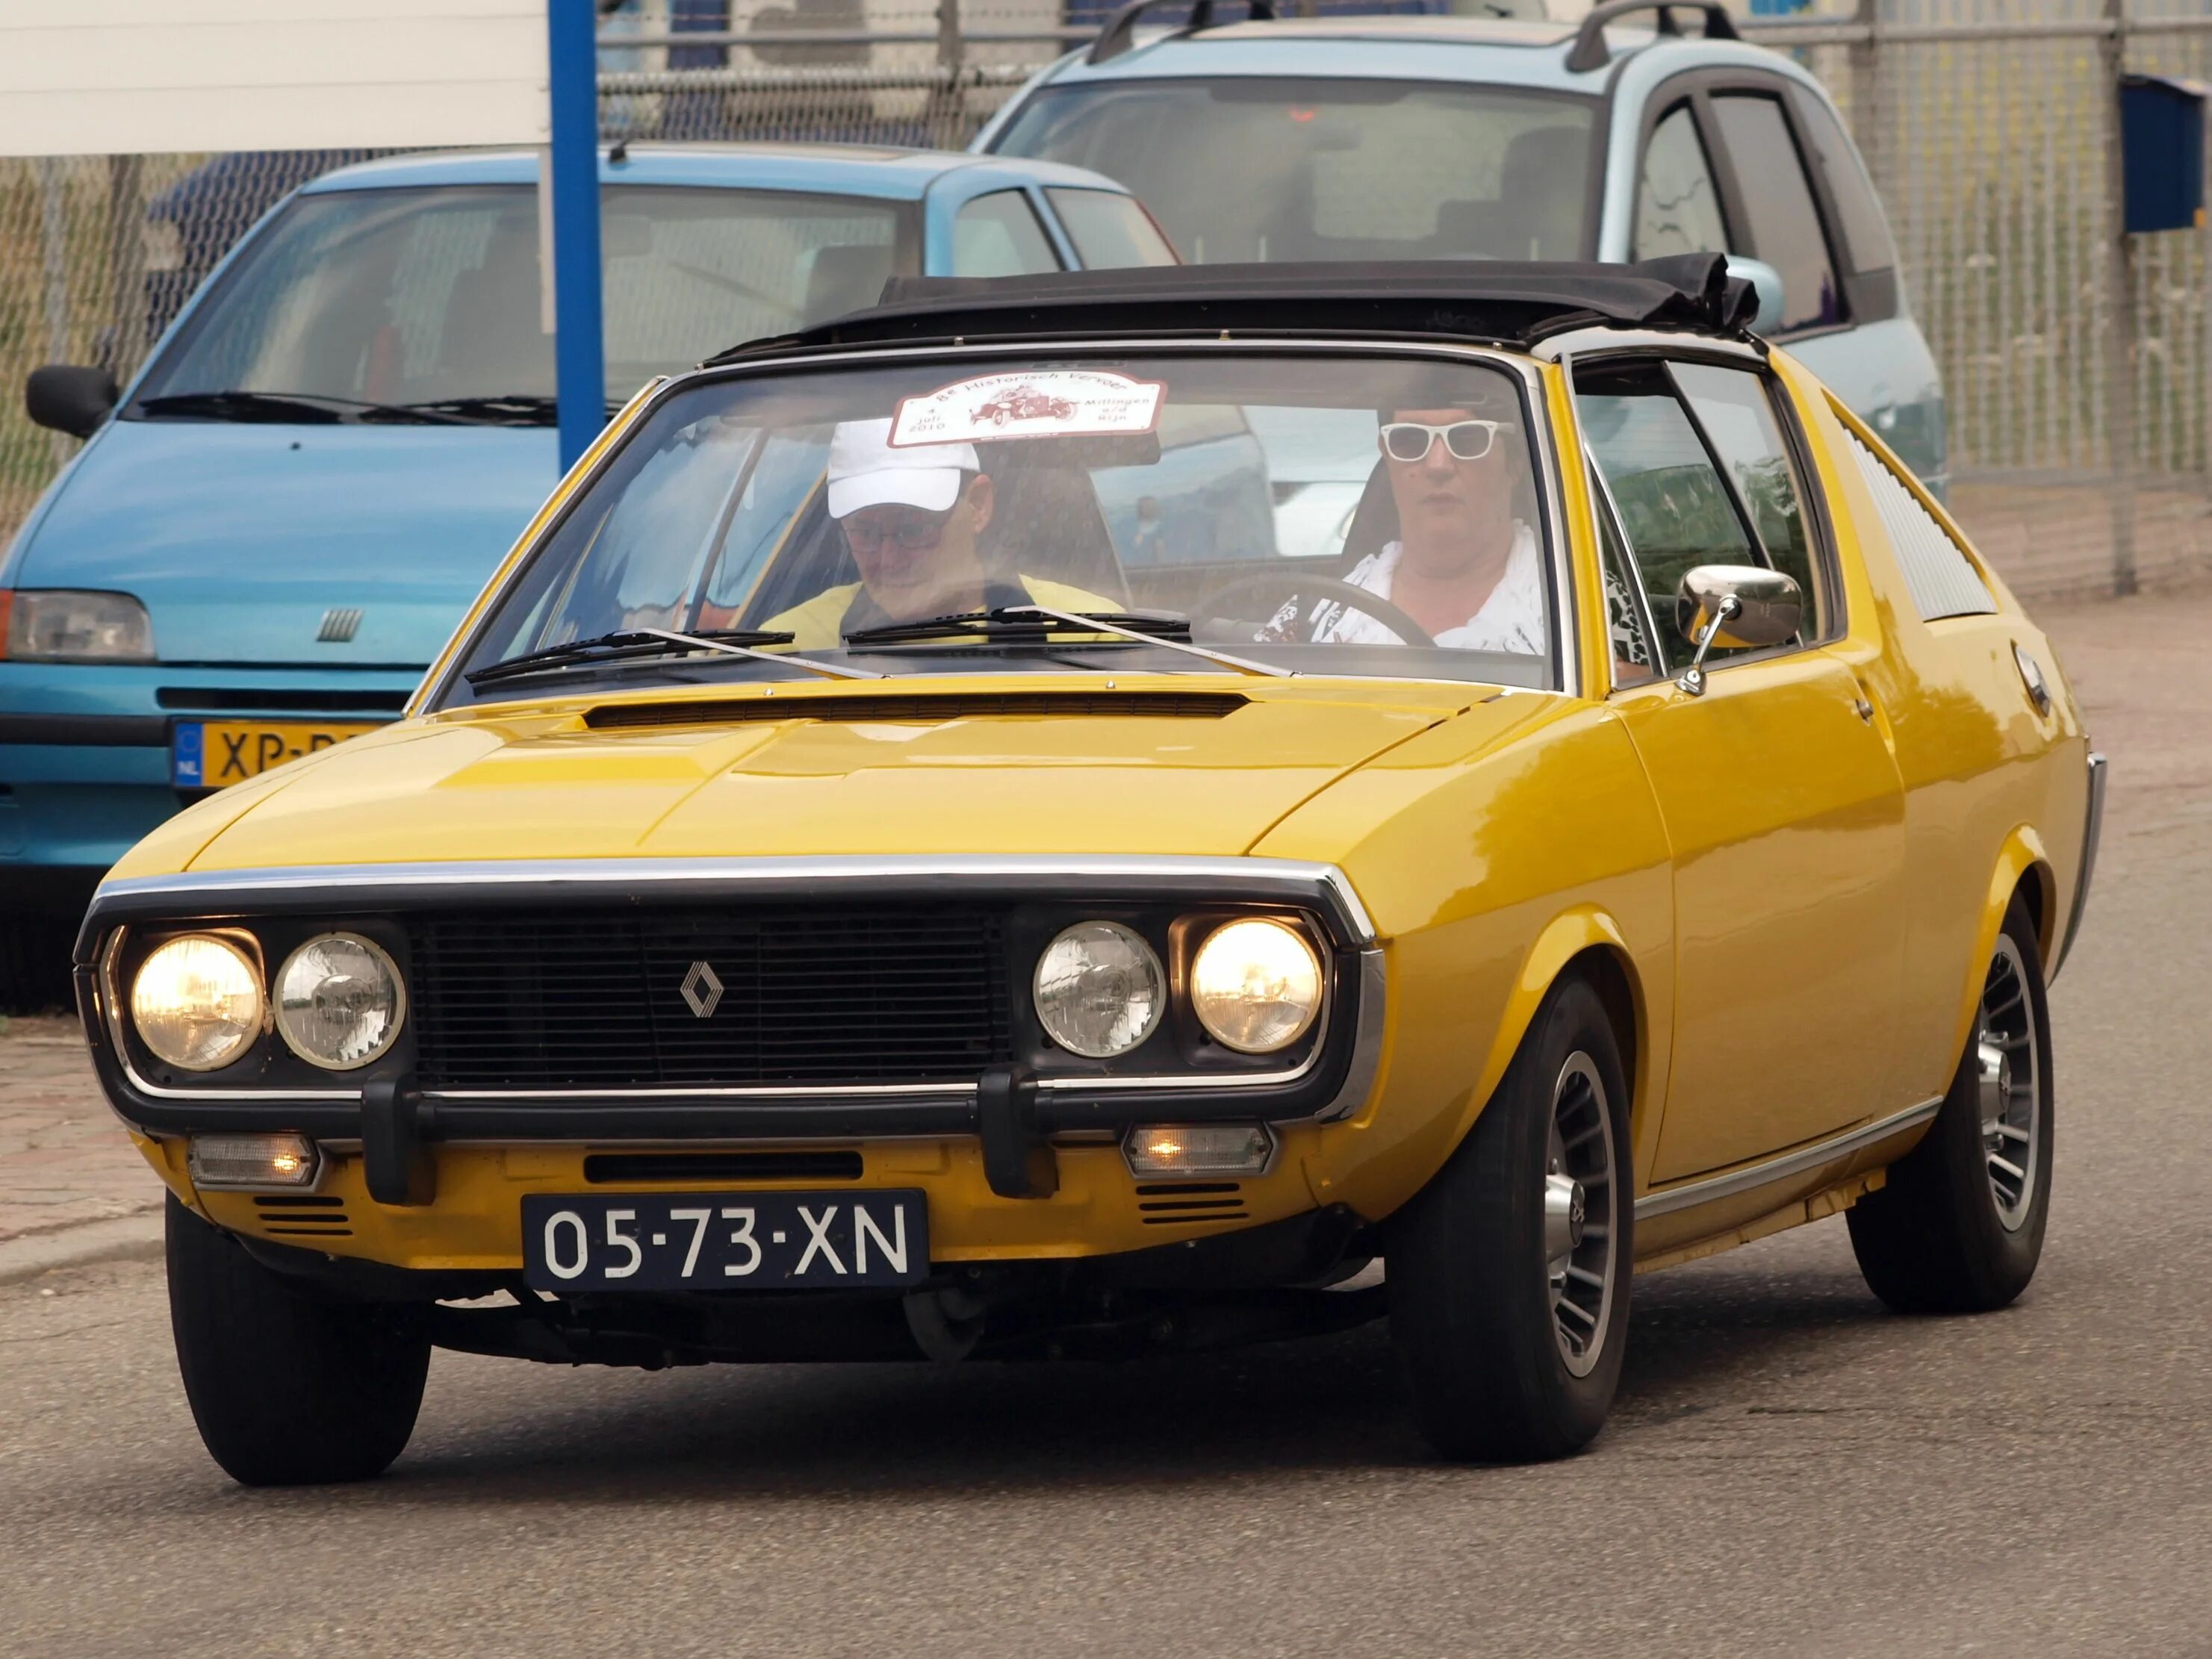 Renault 17tl. Renault 17 Gordini. Renault 17 1973. Renault 15 and 17. Renault 17